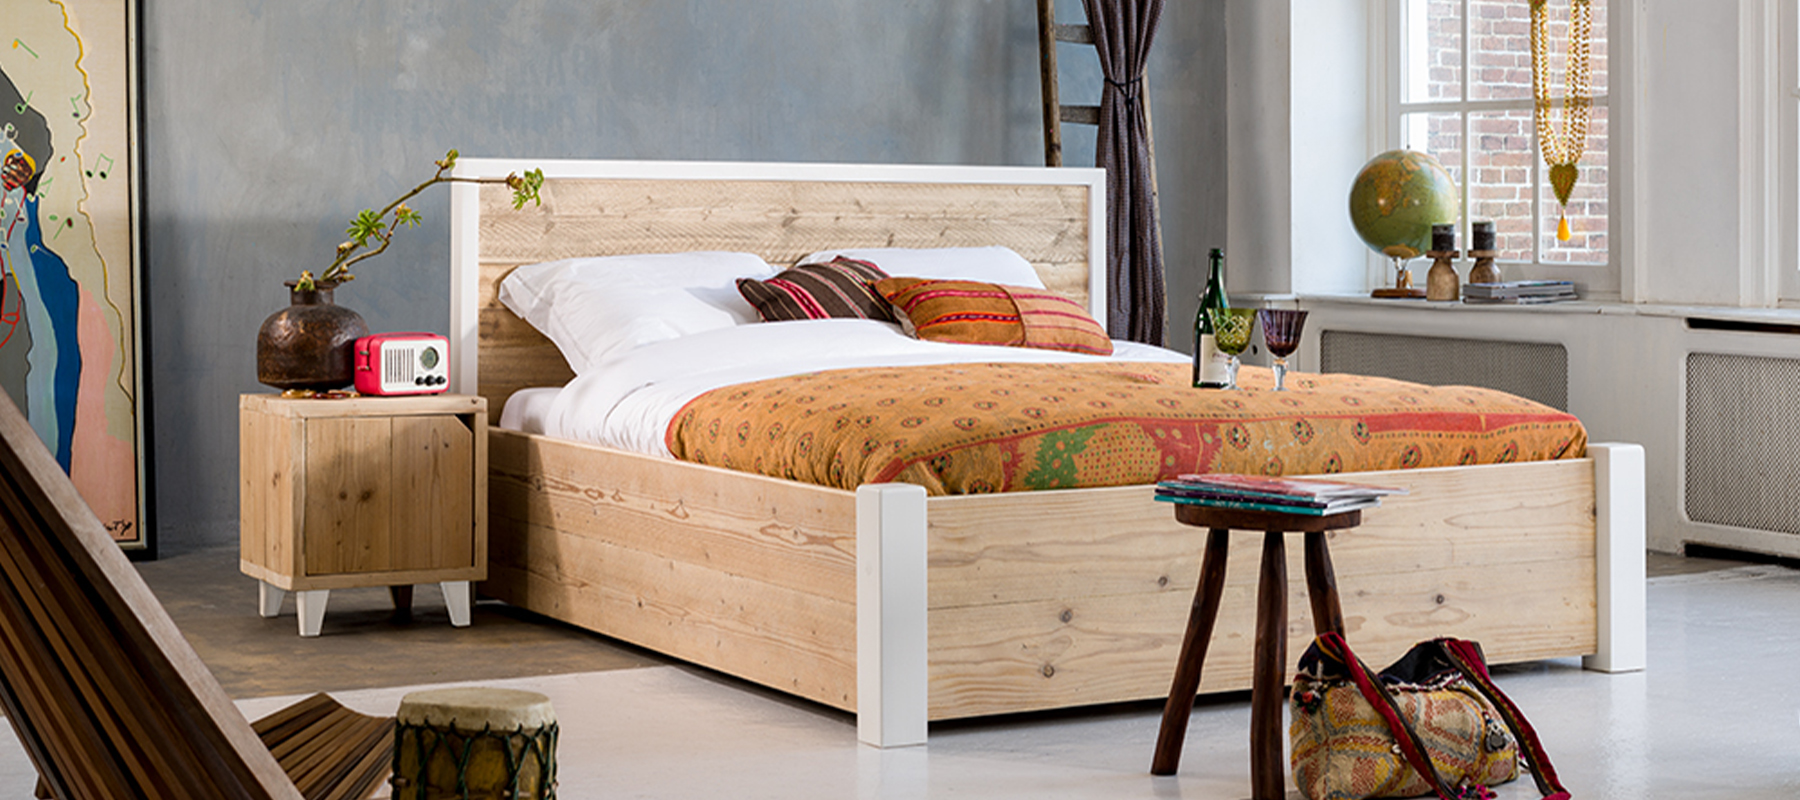 Retro woonstijl bij livengo houten bed